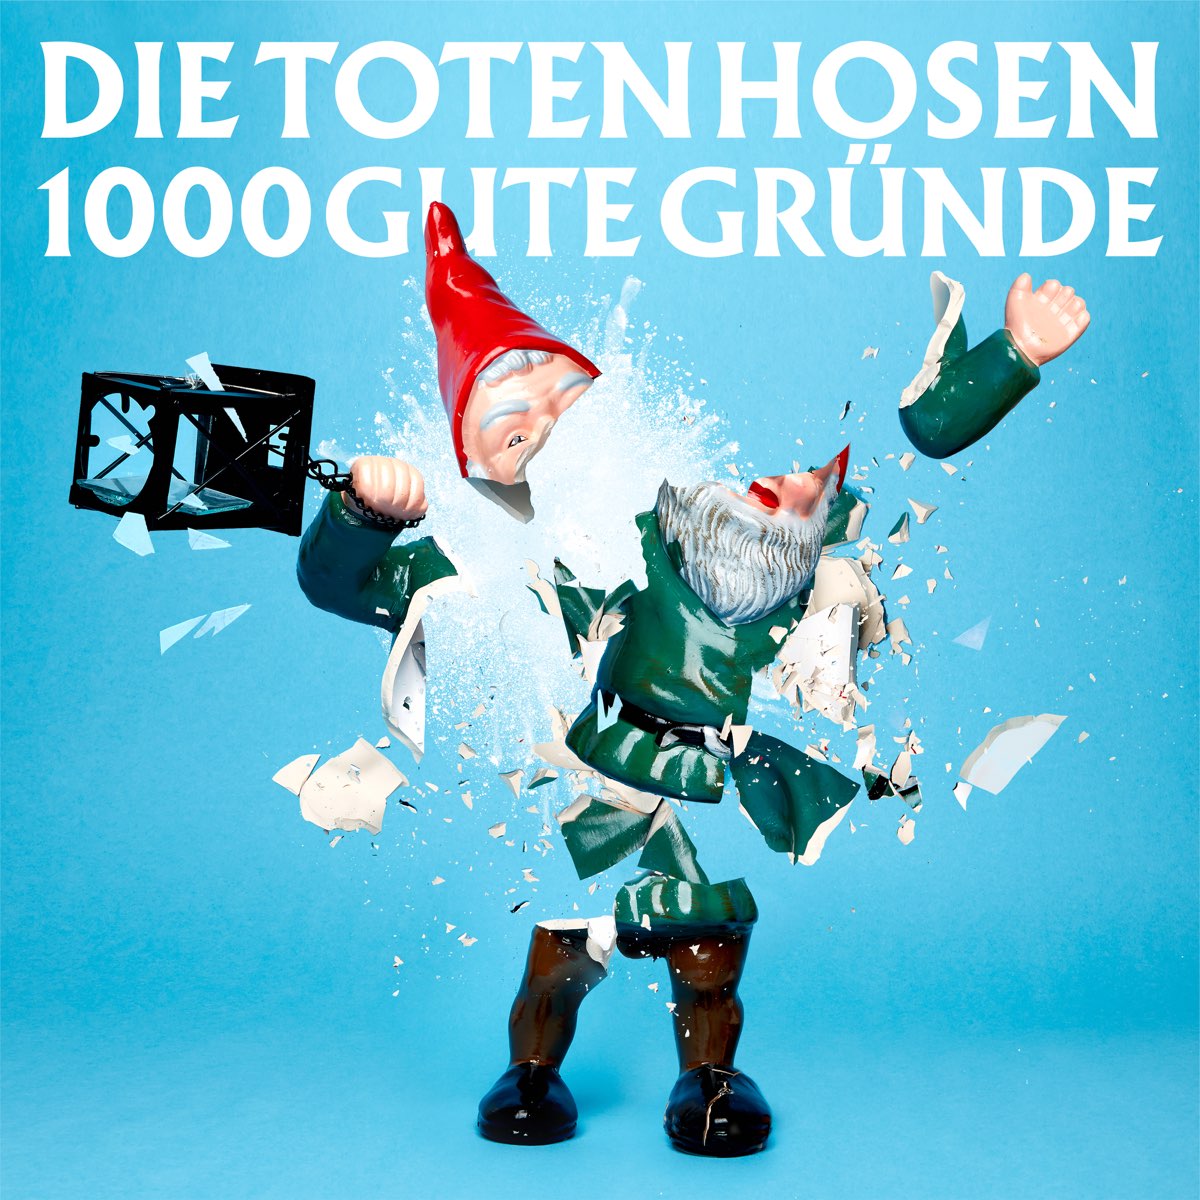 1000 gute Gründe (Ohne Strom) - Single by Die Toten Hosen on Apple Music